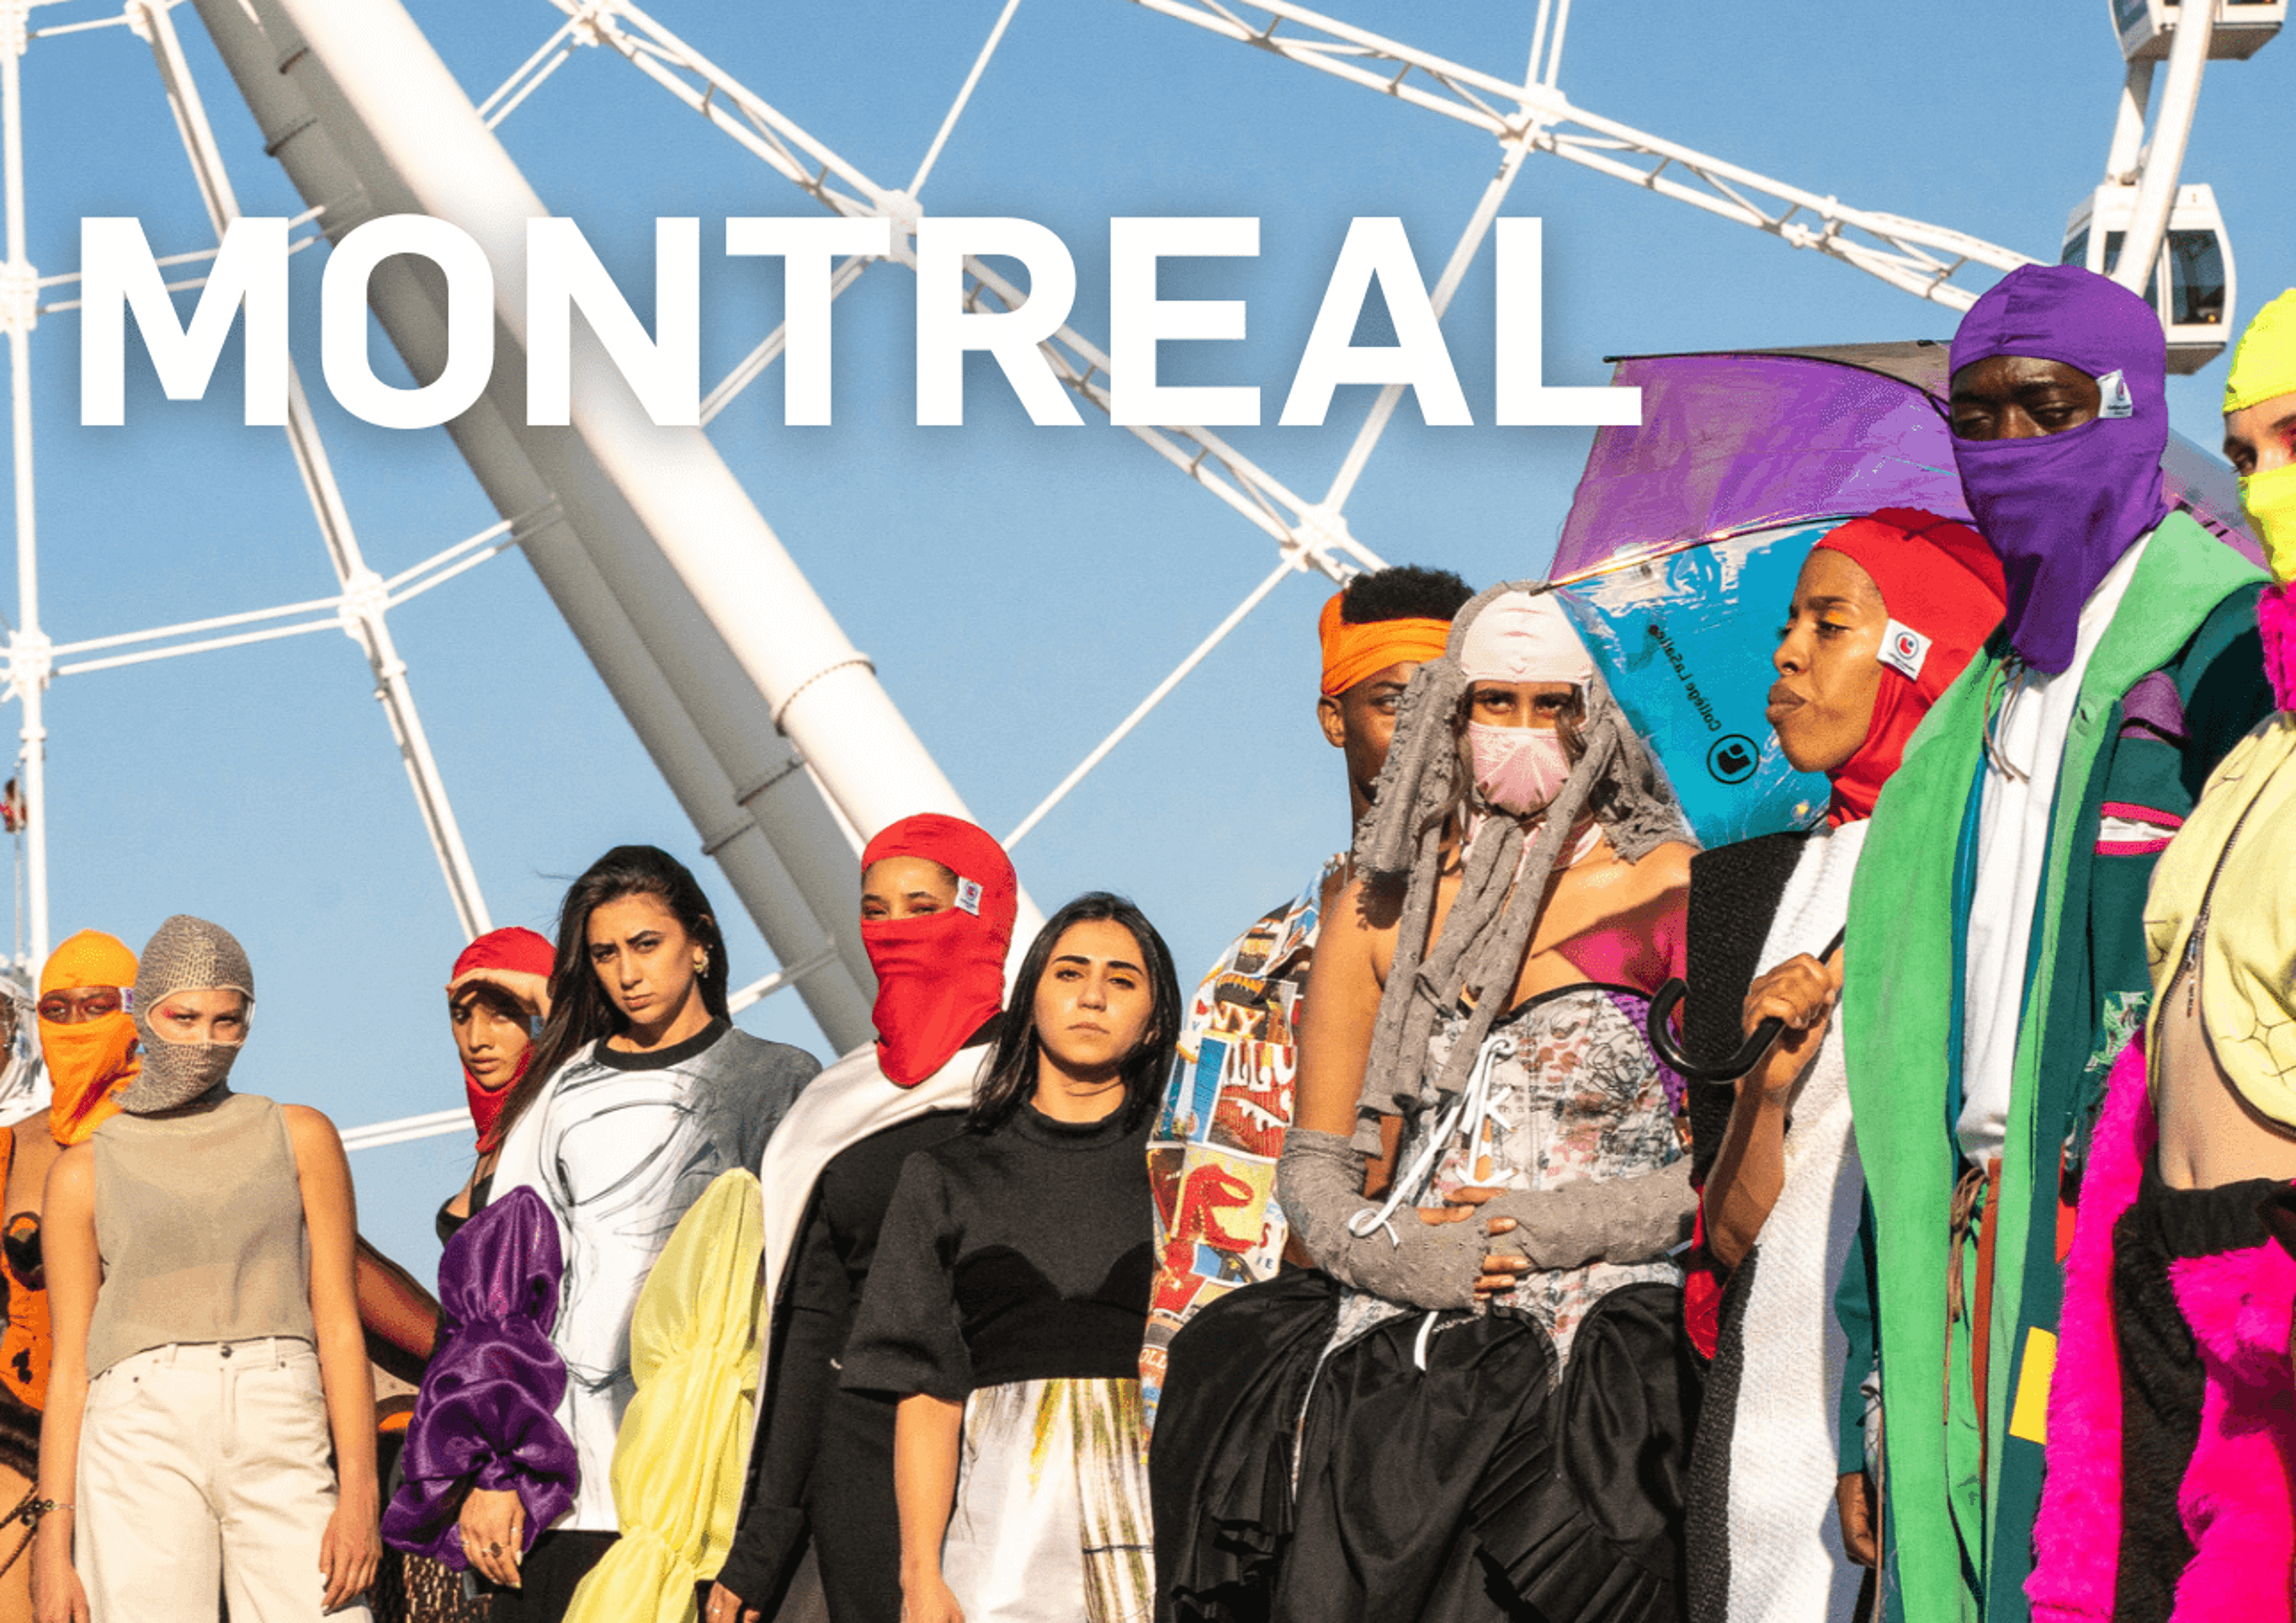 Un groupe de mannequins présentant divers styles vestimentaires lors d'un événement en plein air à Montréal.